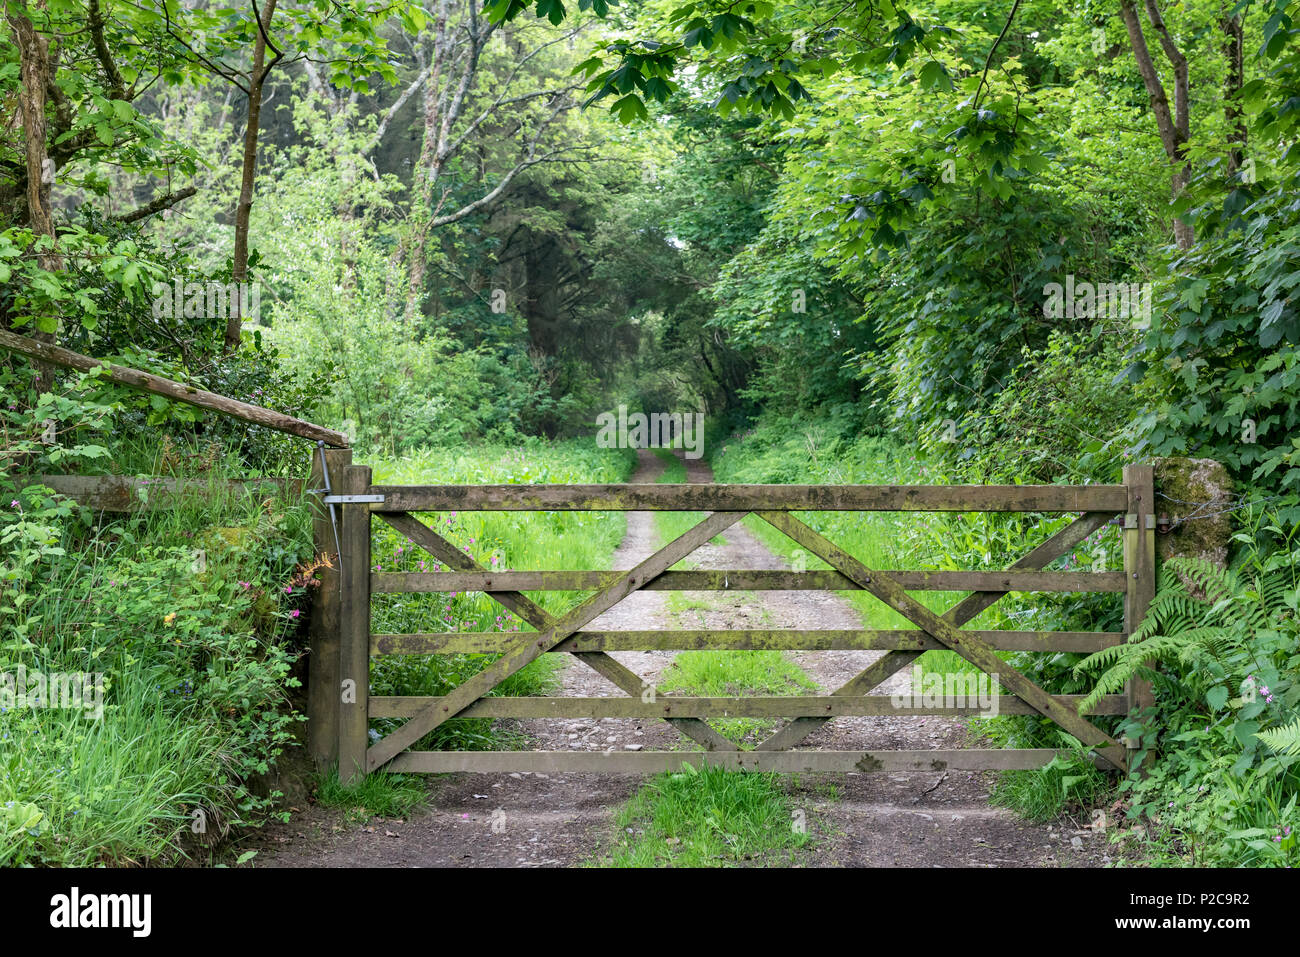 Puerta de madera de cinco barras a través de una pista forestal, con exuberantes bosques verdes alrededor. Foto de stock